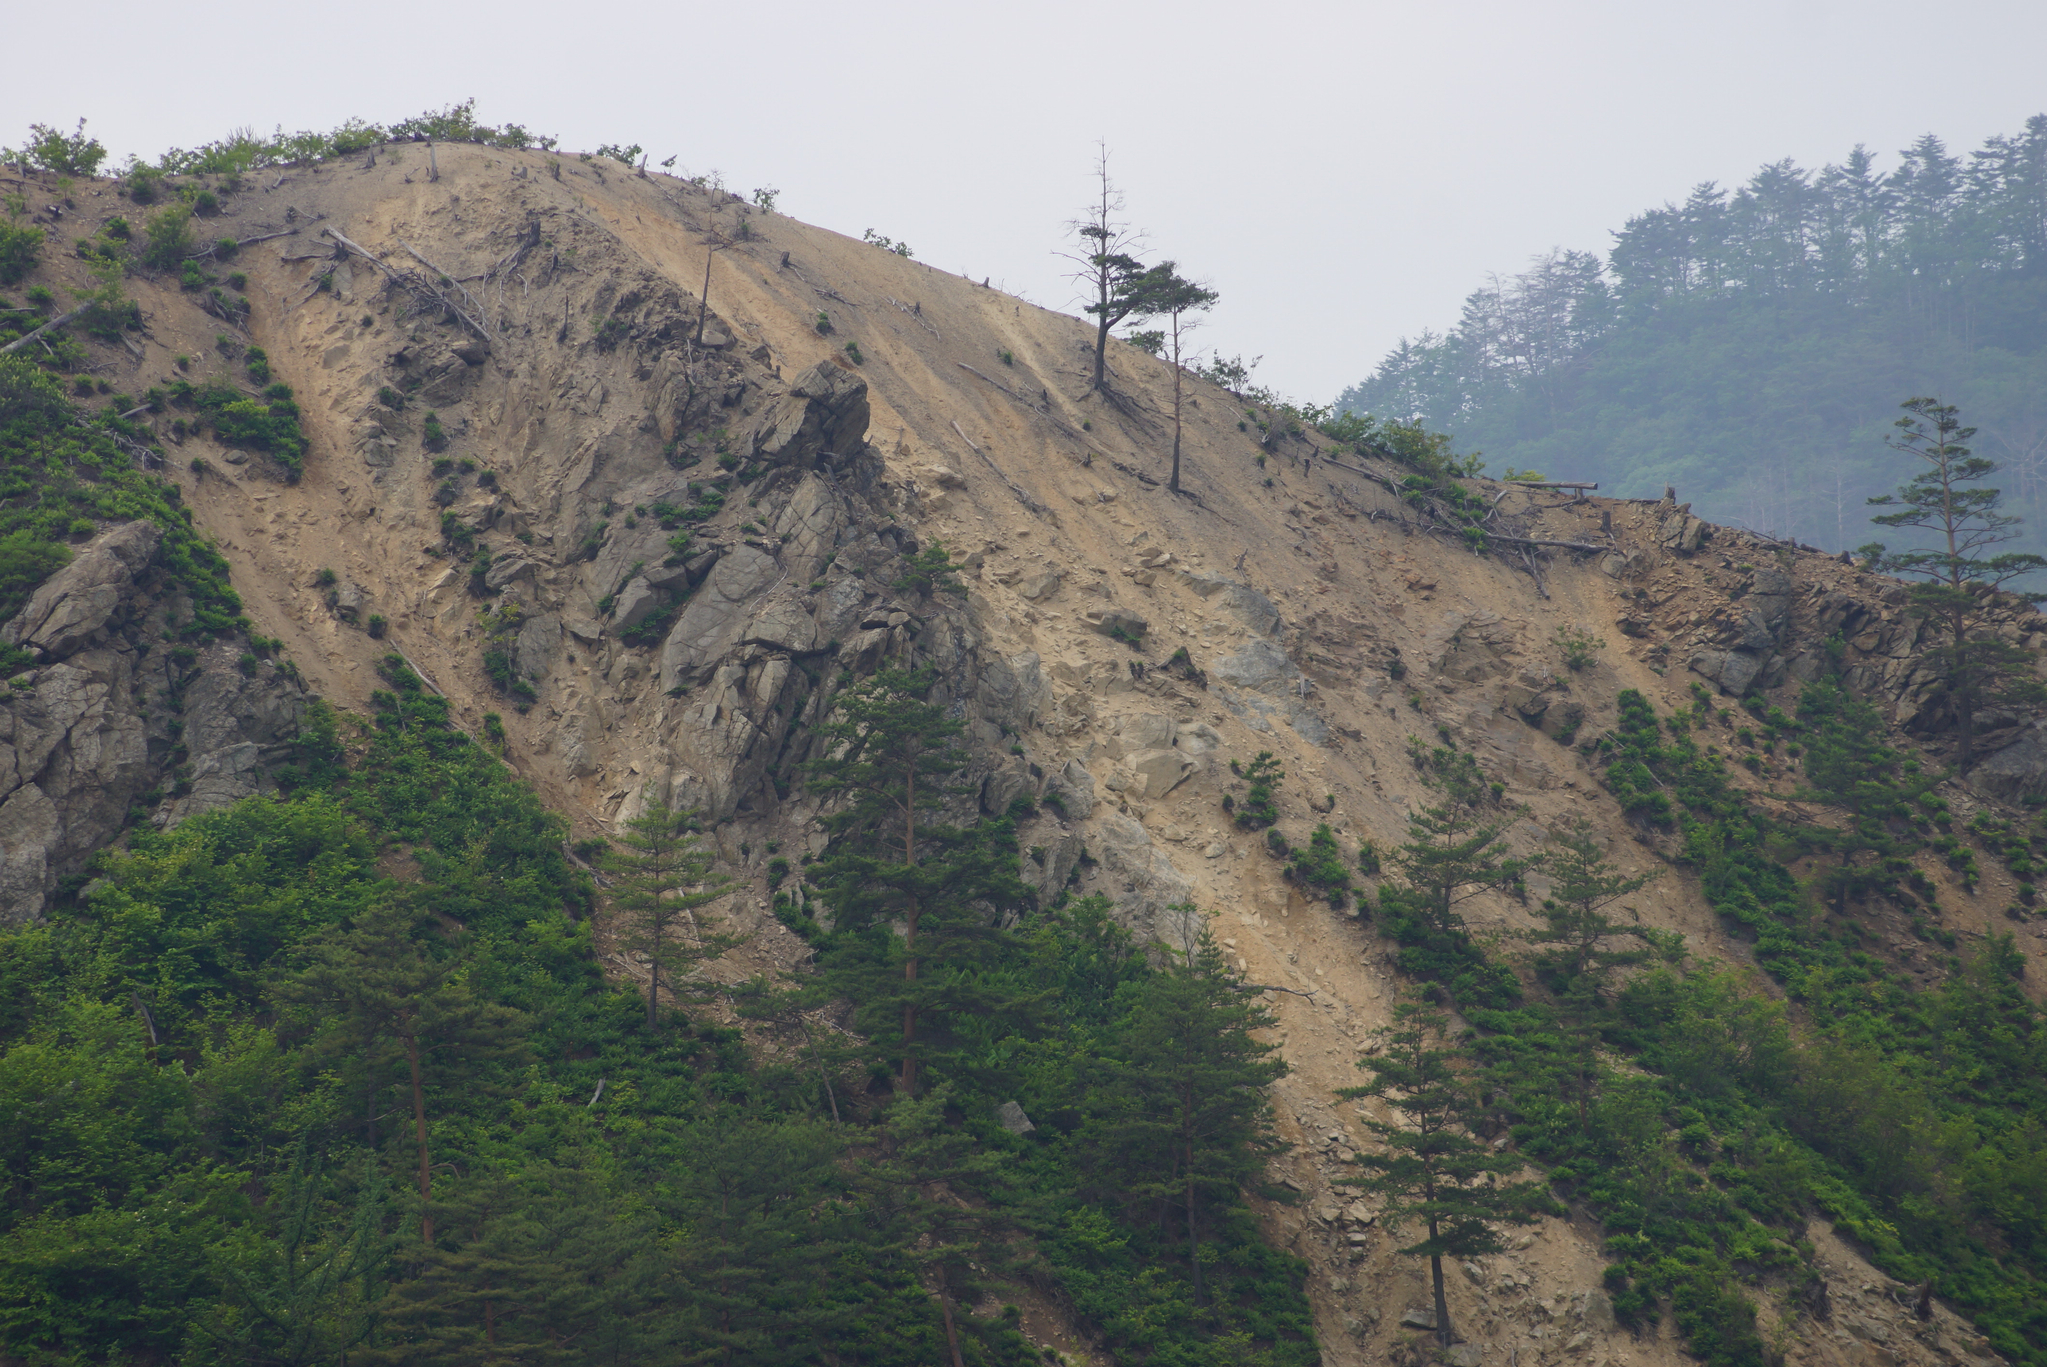 경북 봉화군 석포면의 훼손된 산림. 일부에서는 인근 제련소에서 배출한 산성 대기오염 물질이 원인이라고 지적하고 있다. 강찬수 기자